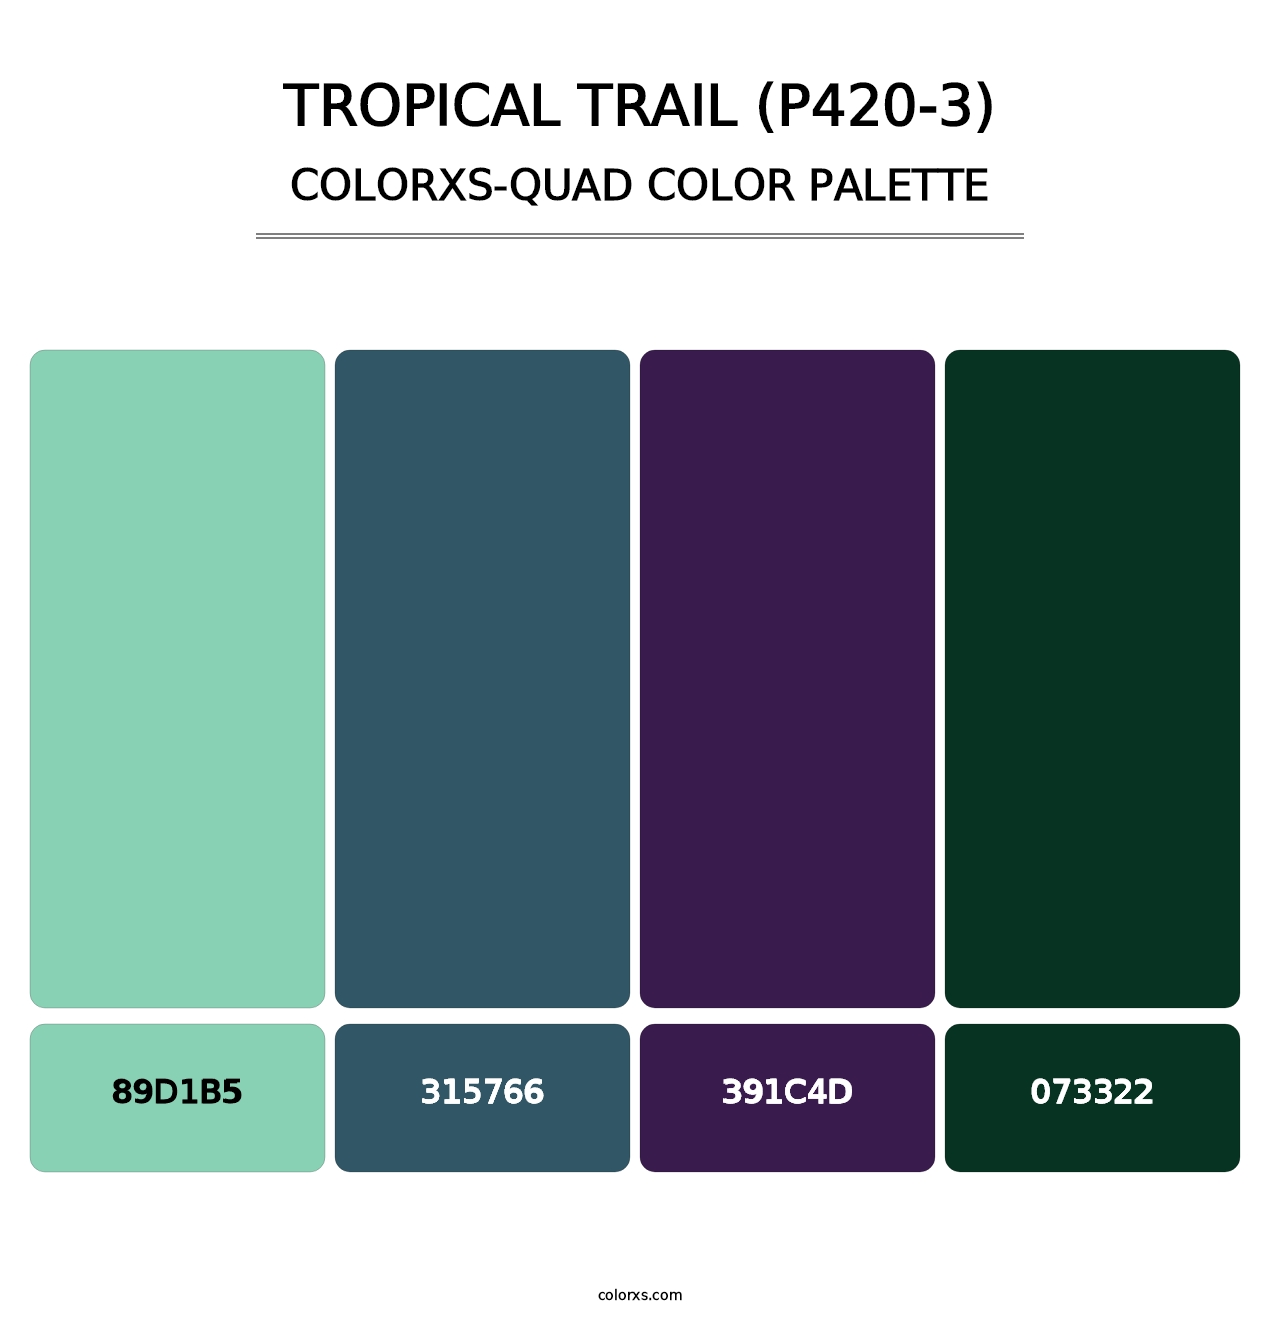 Tropical Trail (P420-3) - Colorxs Quad Palette